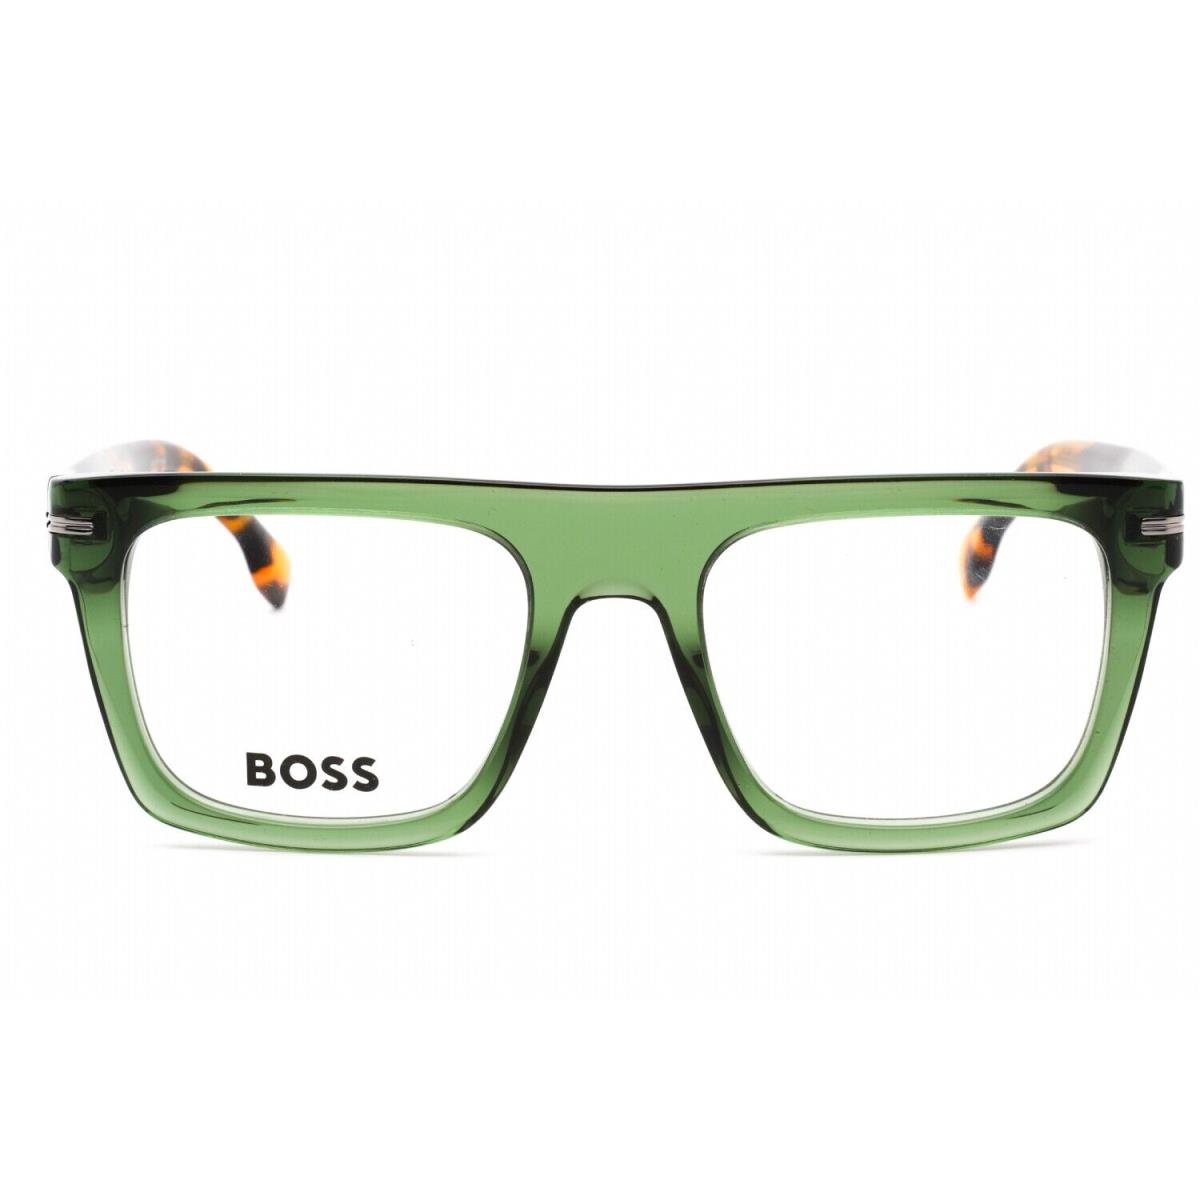 Hugo Boss Boss 1597 Xgw Eyeglasses Green Havana Frame 52mm